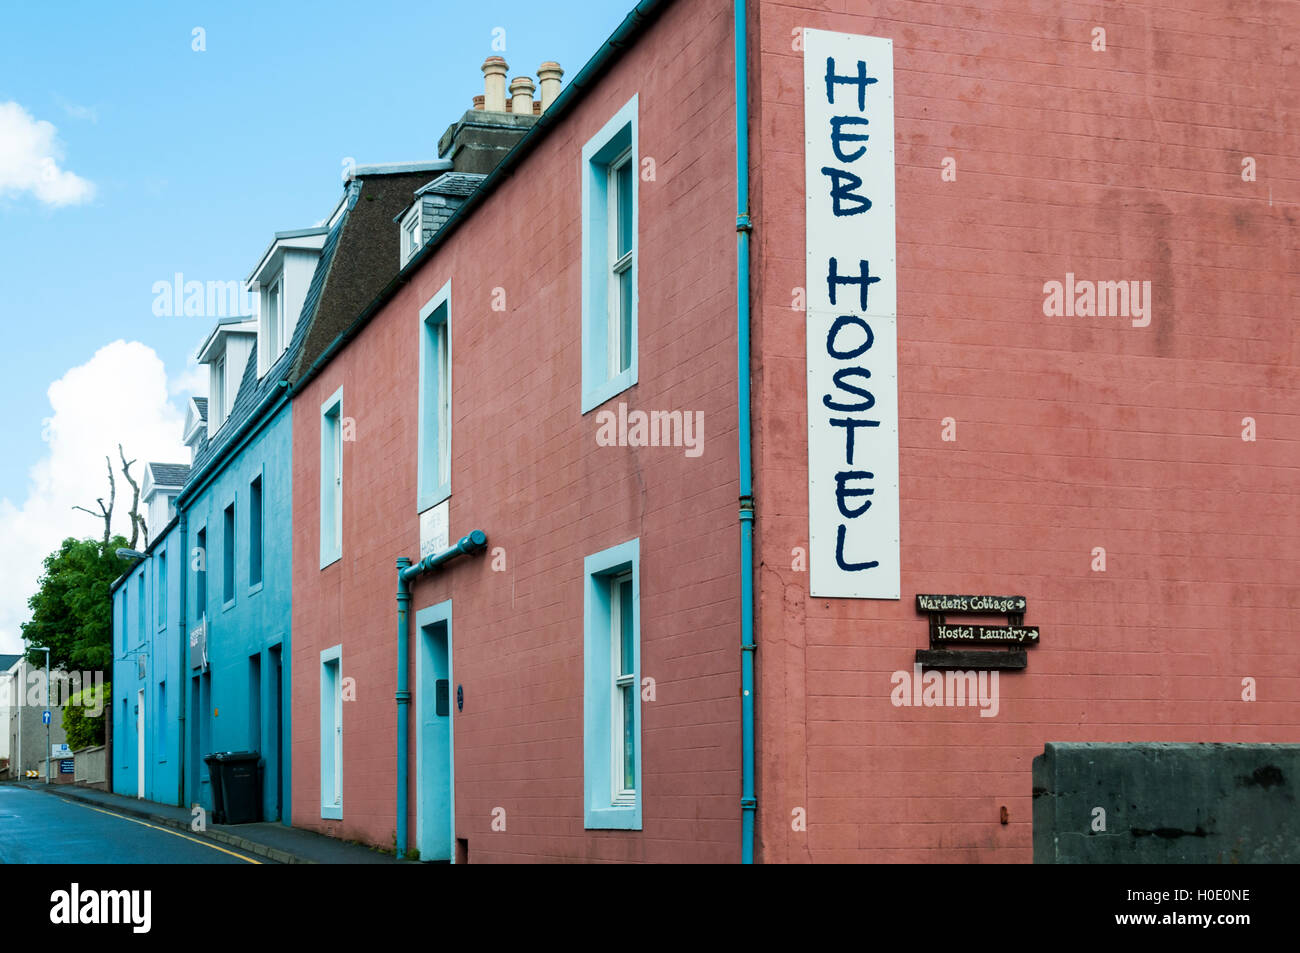 Heb Hostel dans Stornoway est un organisme indépendant backpackers' hostel. Banque D'Images